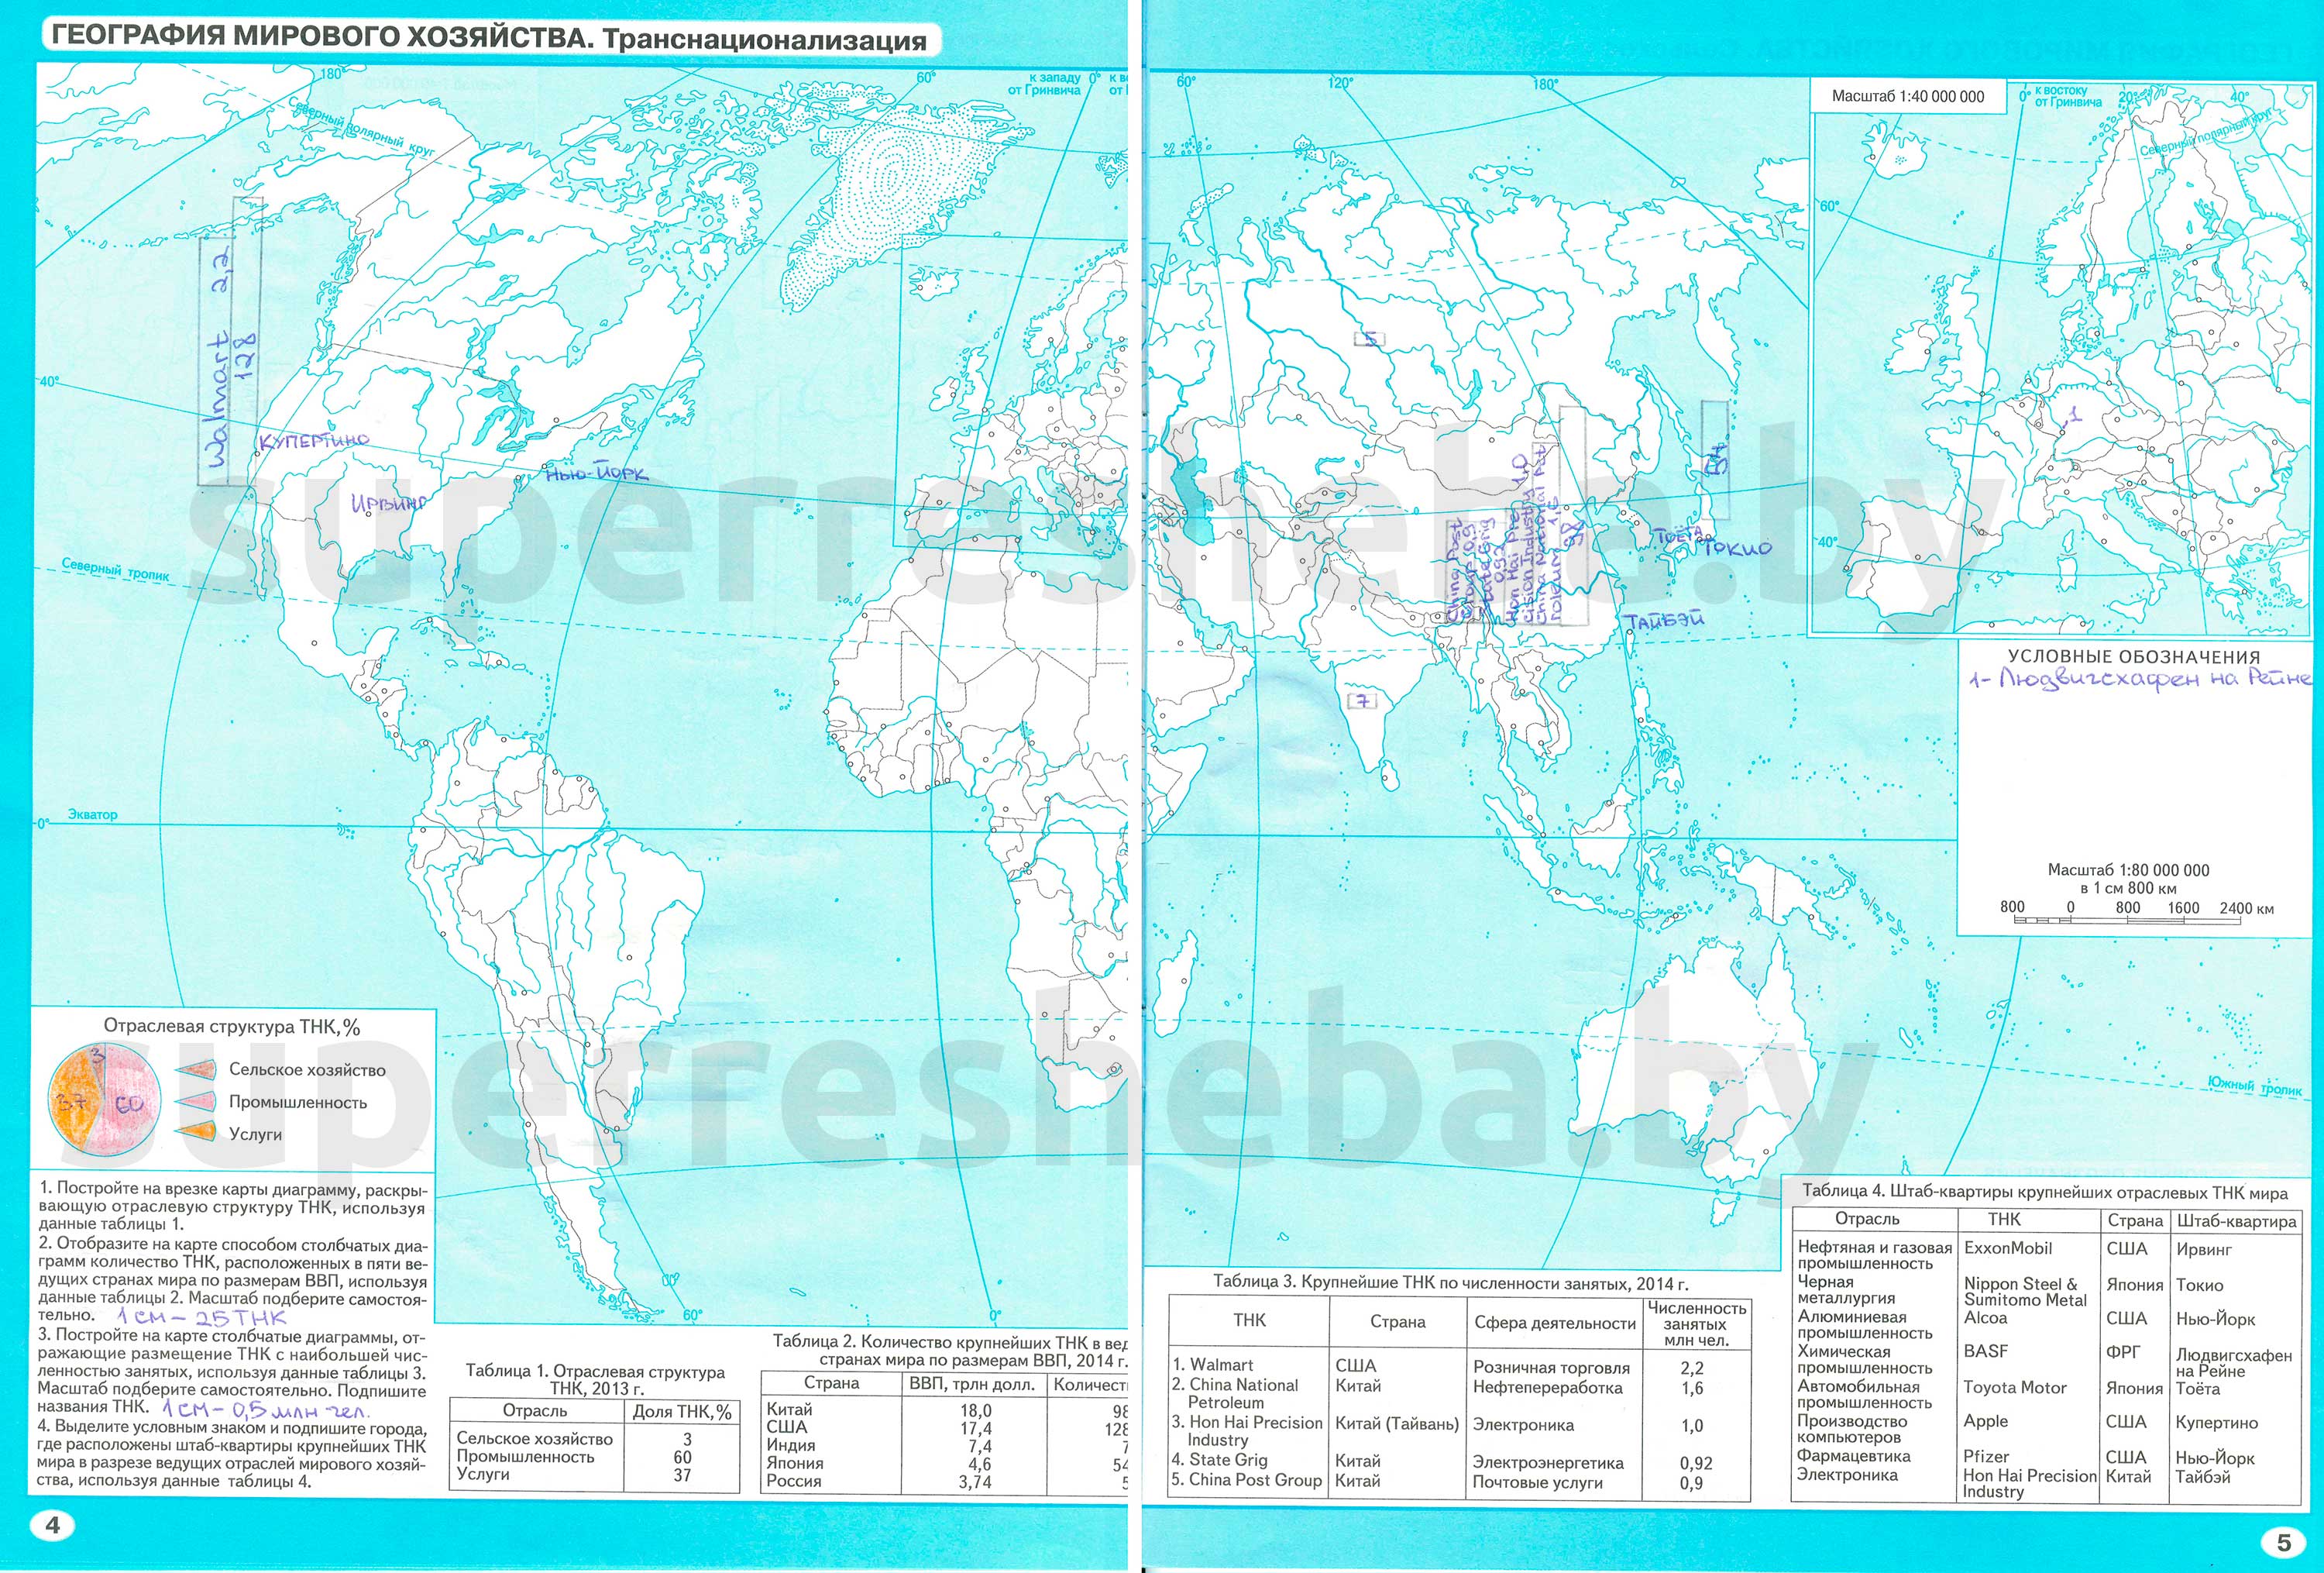 География мирового хозяйства. Современная структура мирового хозяйства, стр. 2-3 - решение